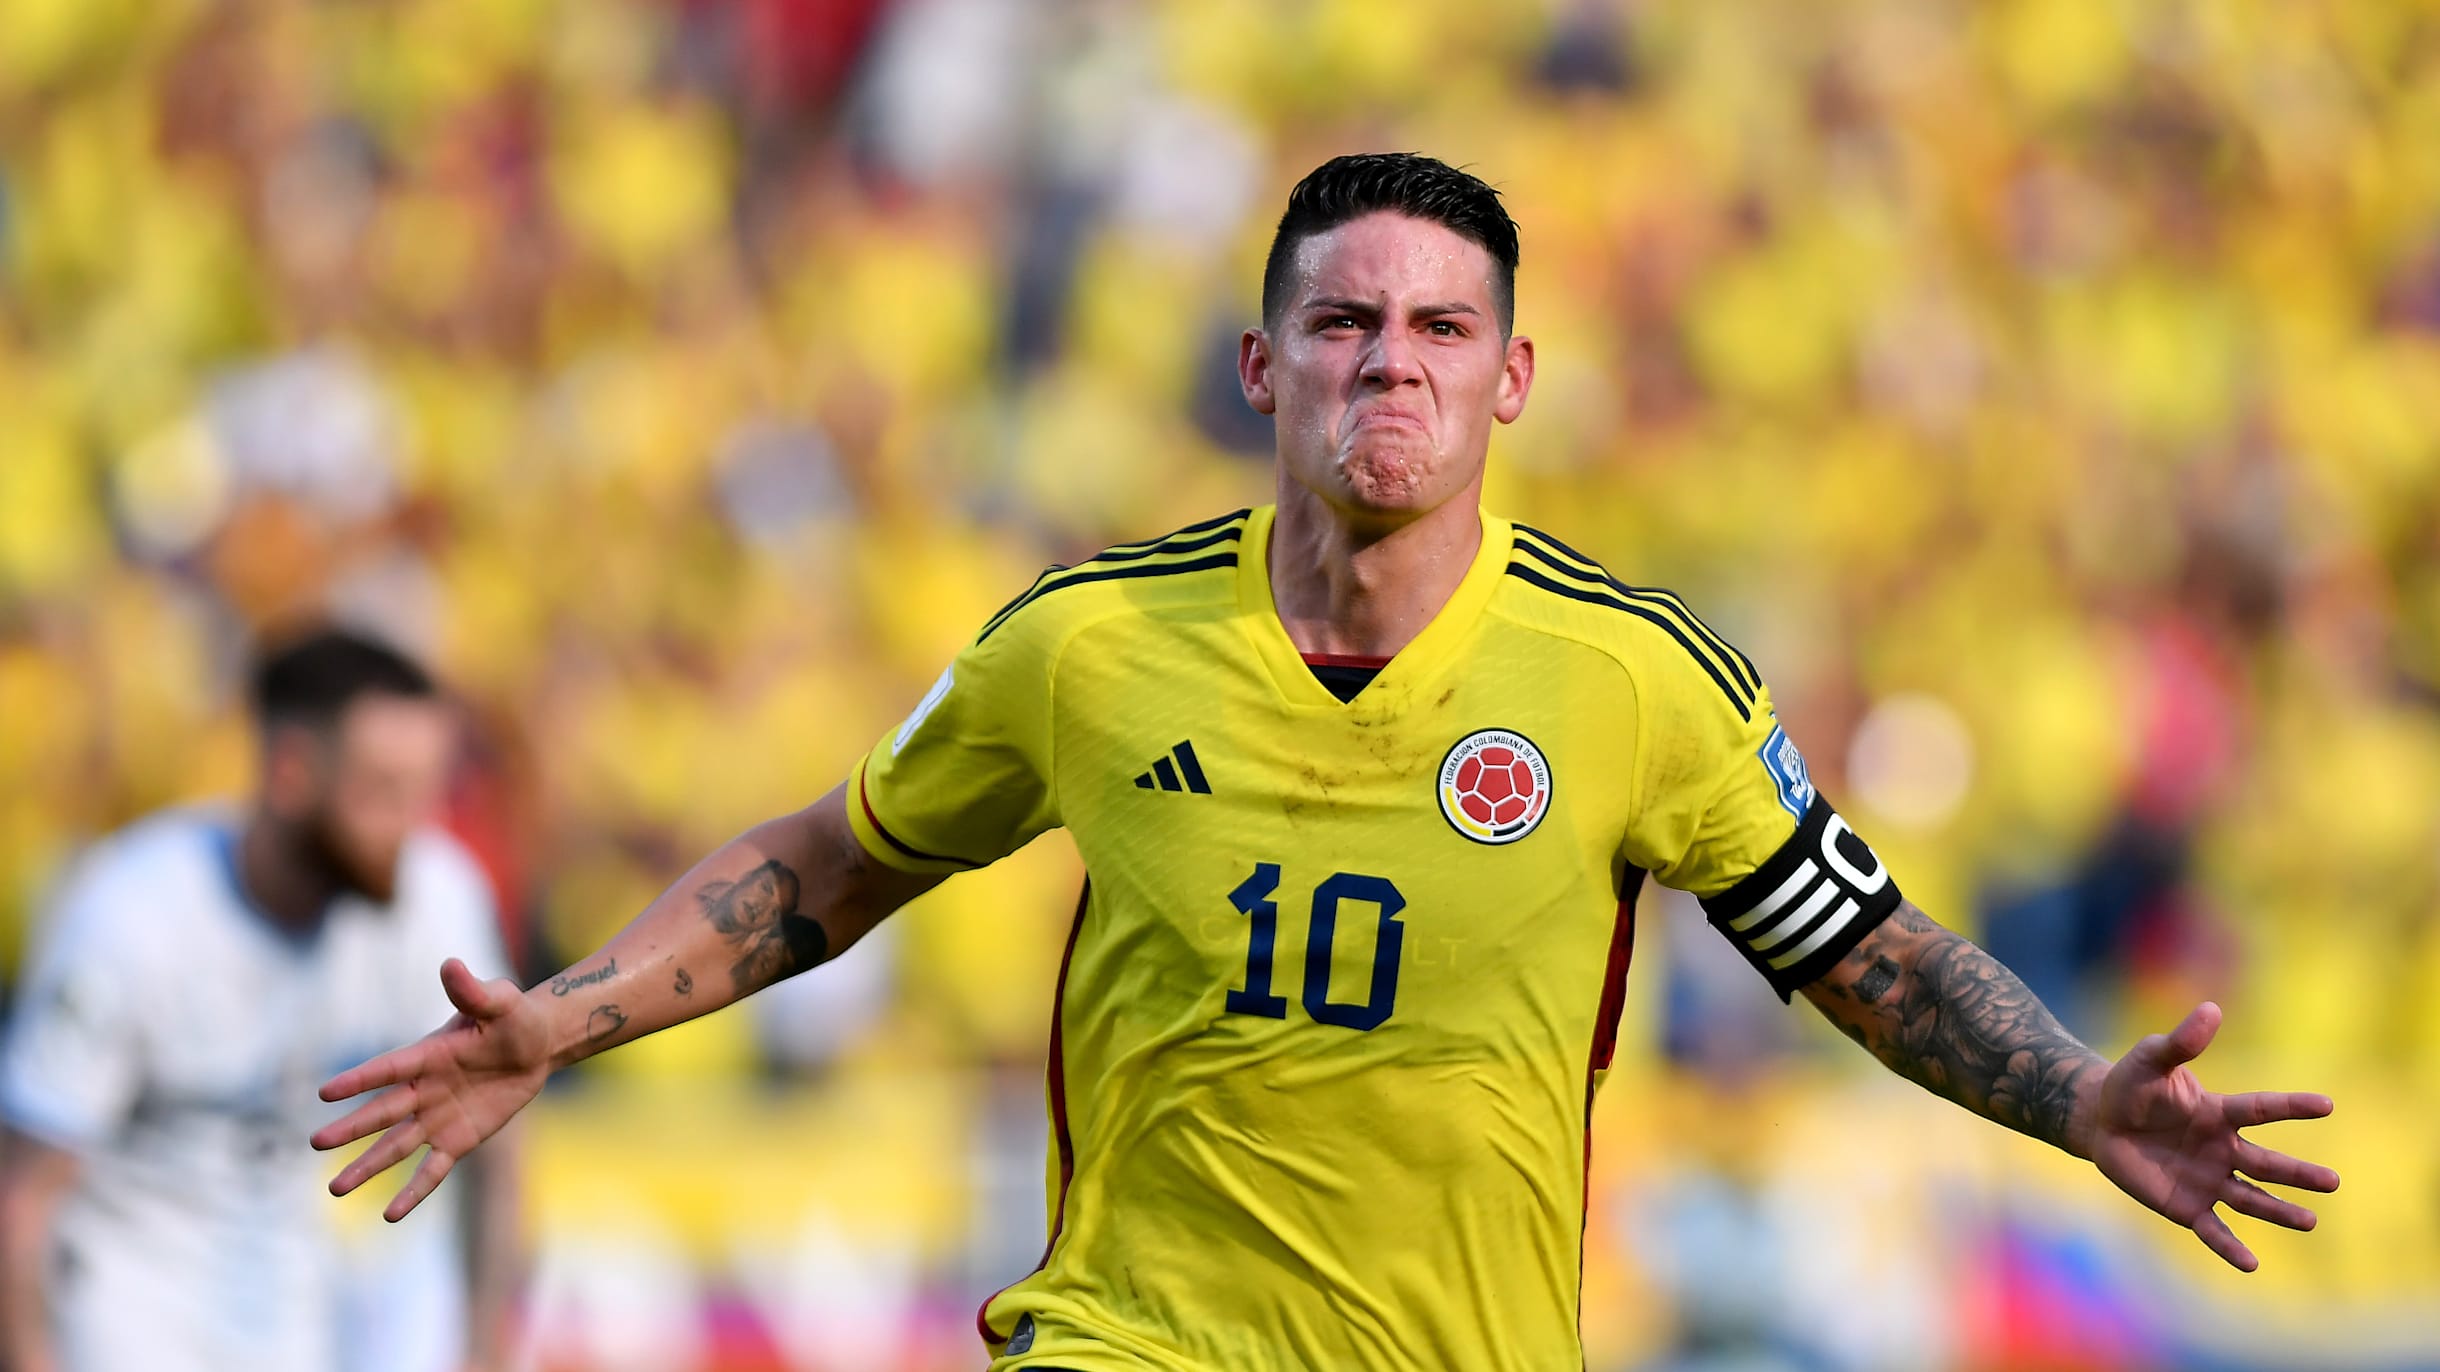 Colombia vs Uruguay, EN VIVO en la fecha 3 de las Eliminatorias  Sudamericanas - GolCaracol